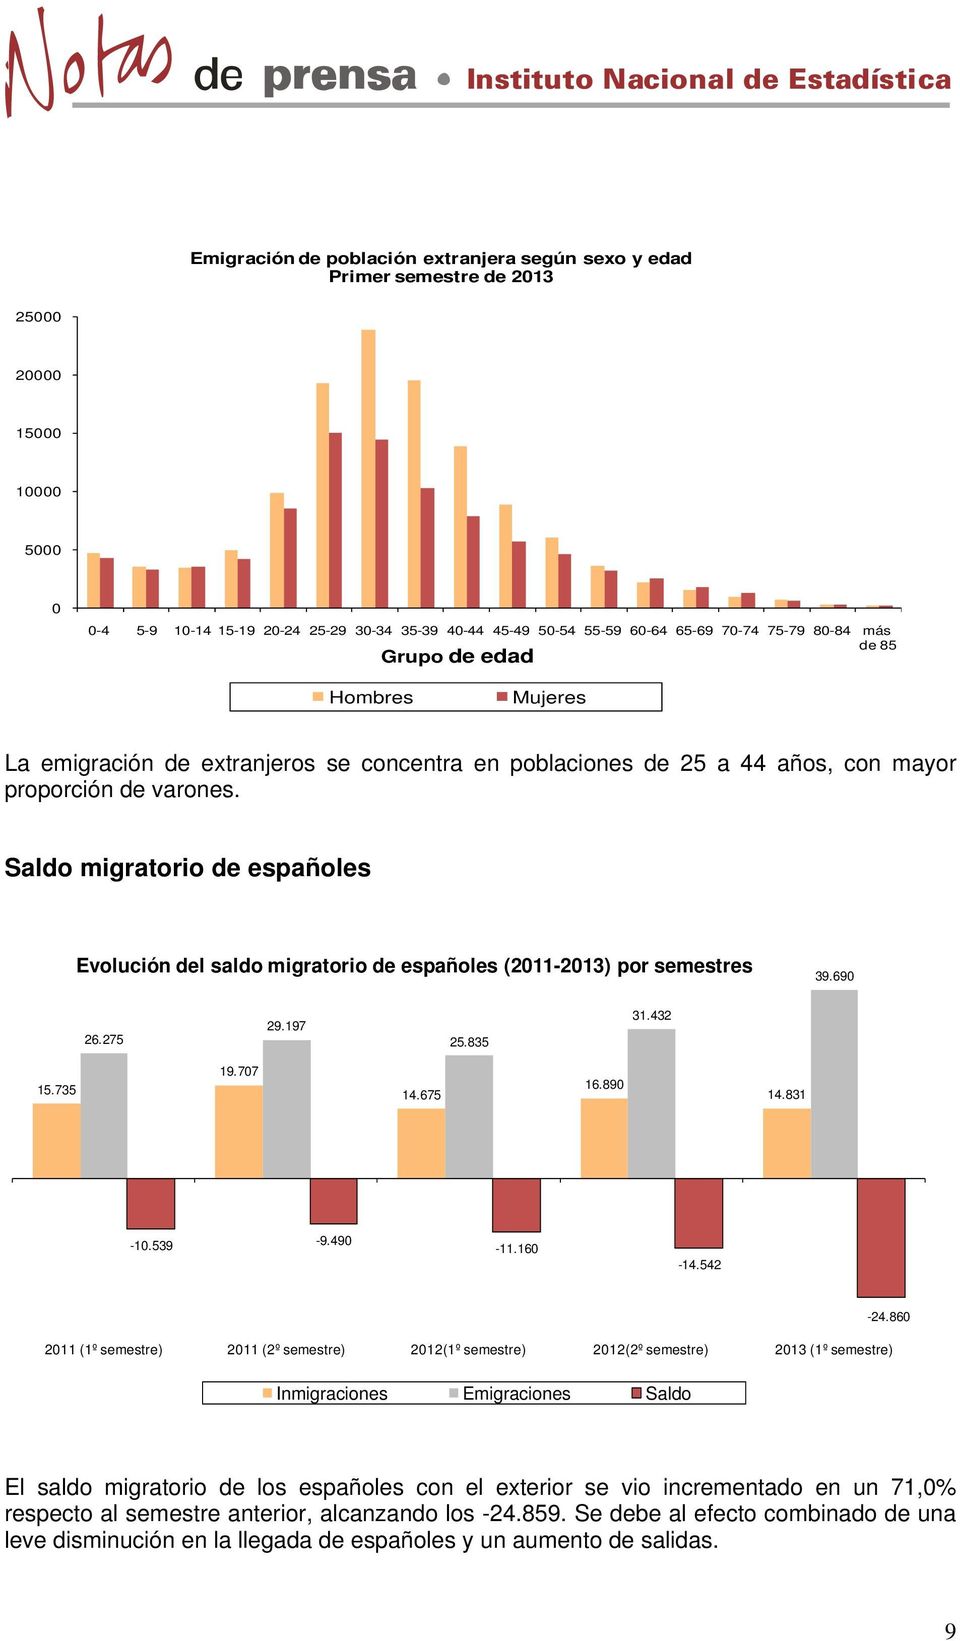 Saldo migratorio de españoles Evolución del saldo migratorio de españoles (2011-2013) por semestres 39.690 26.275 29.197 25.835 31.432 15.735 19.707 14.675 16.890 14.831-10.539-9.490-11.160-14.